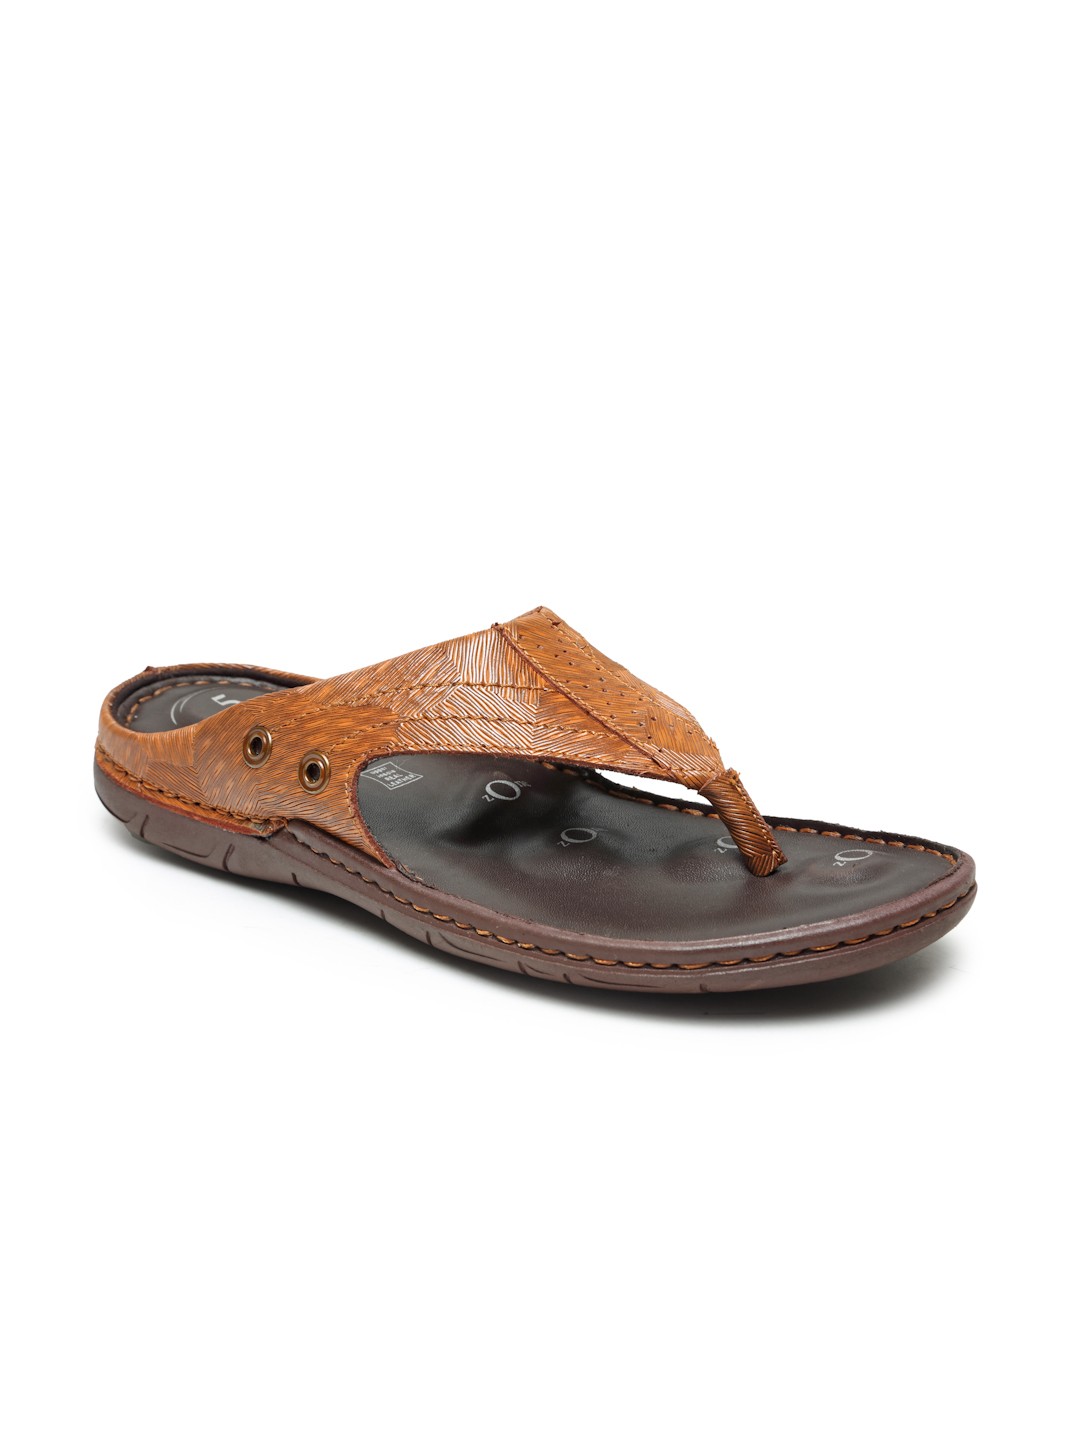 Buy Von Wellx Germany Comfort Men's Tan Slippers Alex Online in Muscat